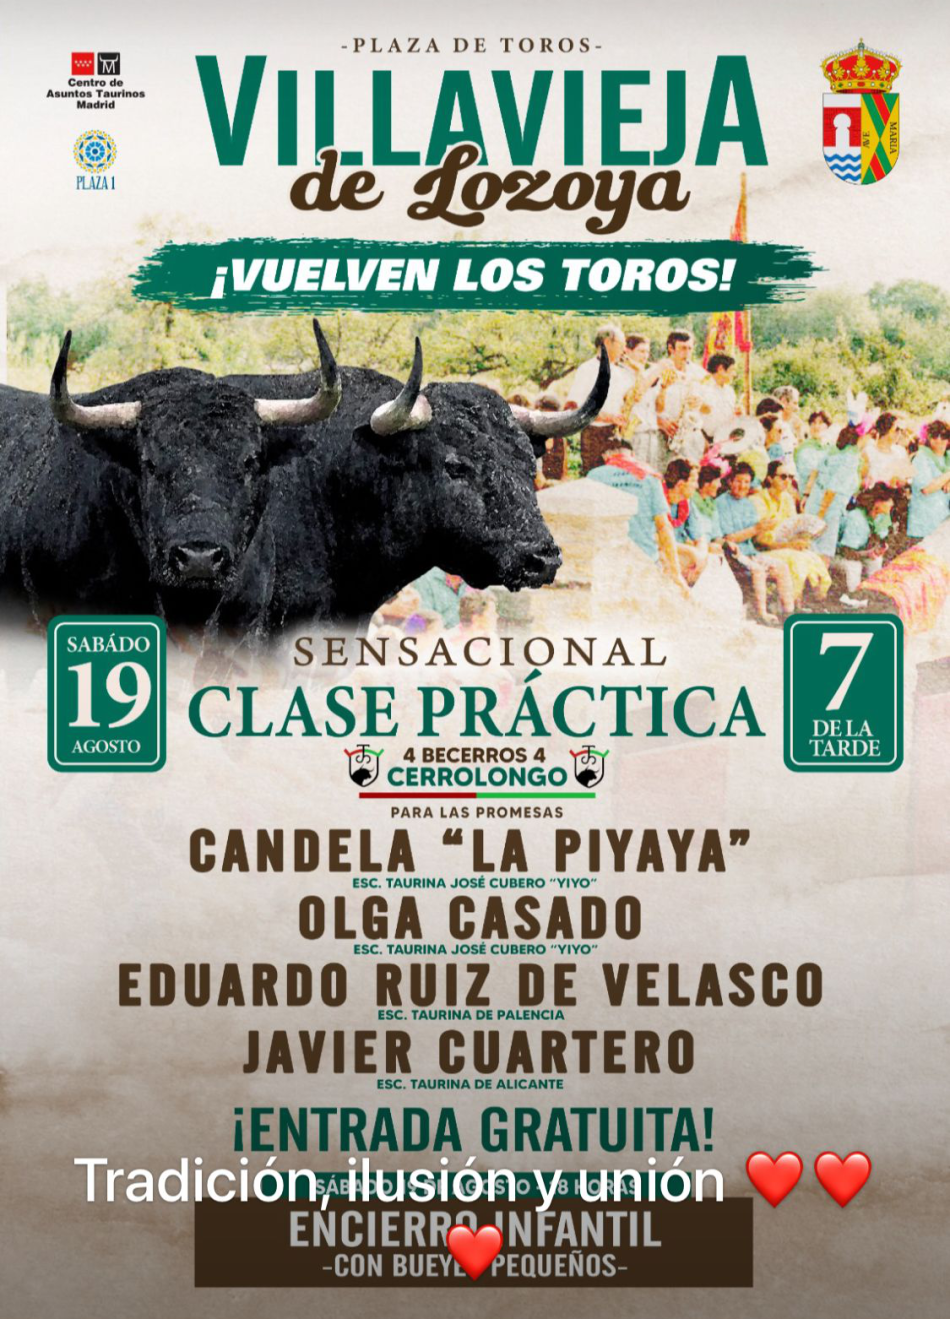 La Asociación Dignidad Animal insta a detener la celebración del evento taurino de Villavieja del Lozoya (Madrid) del 19 de agosto